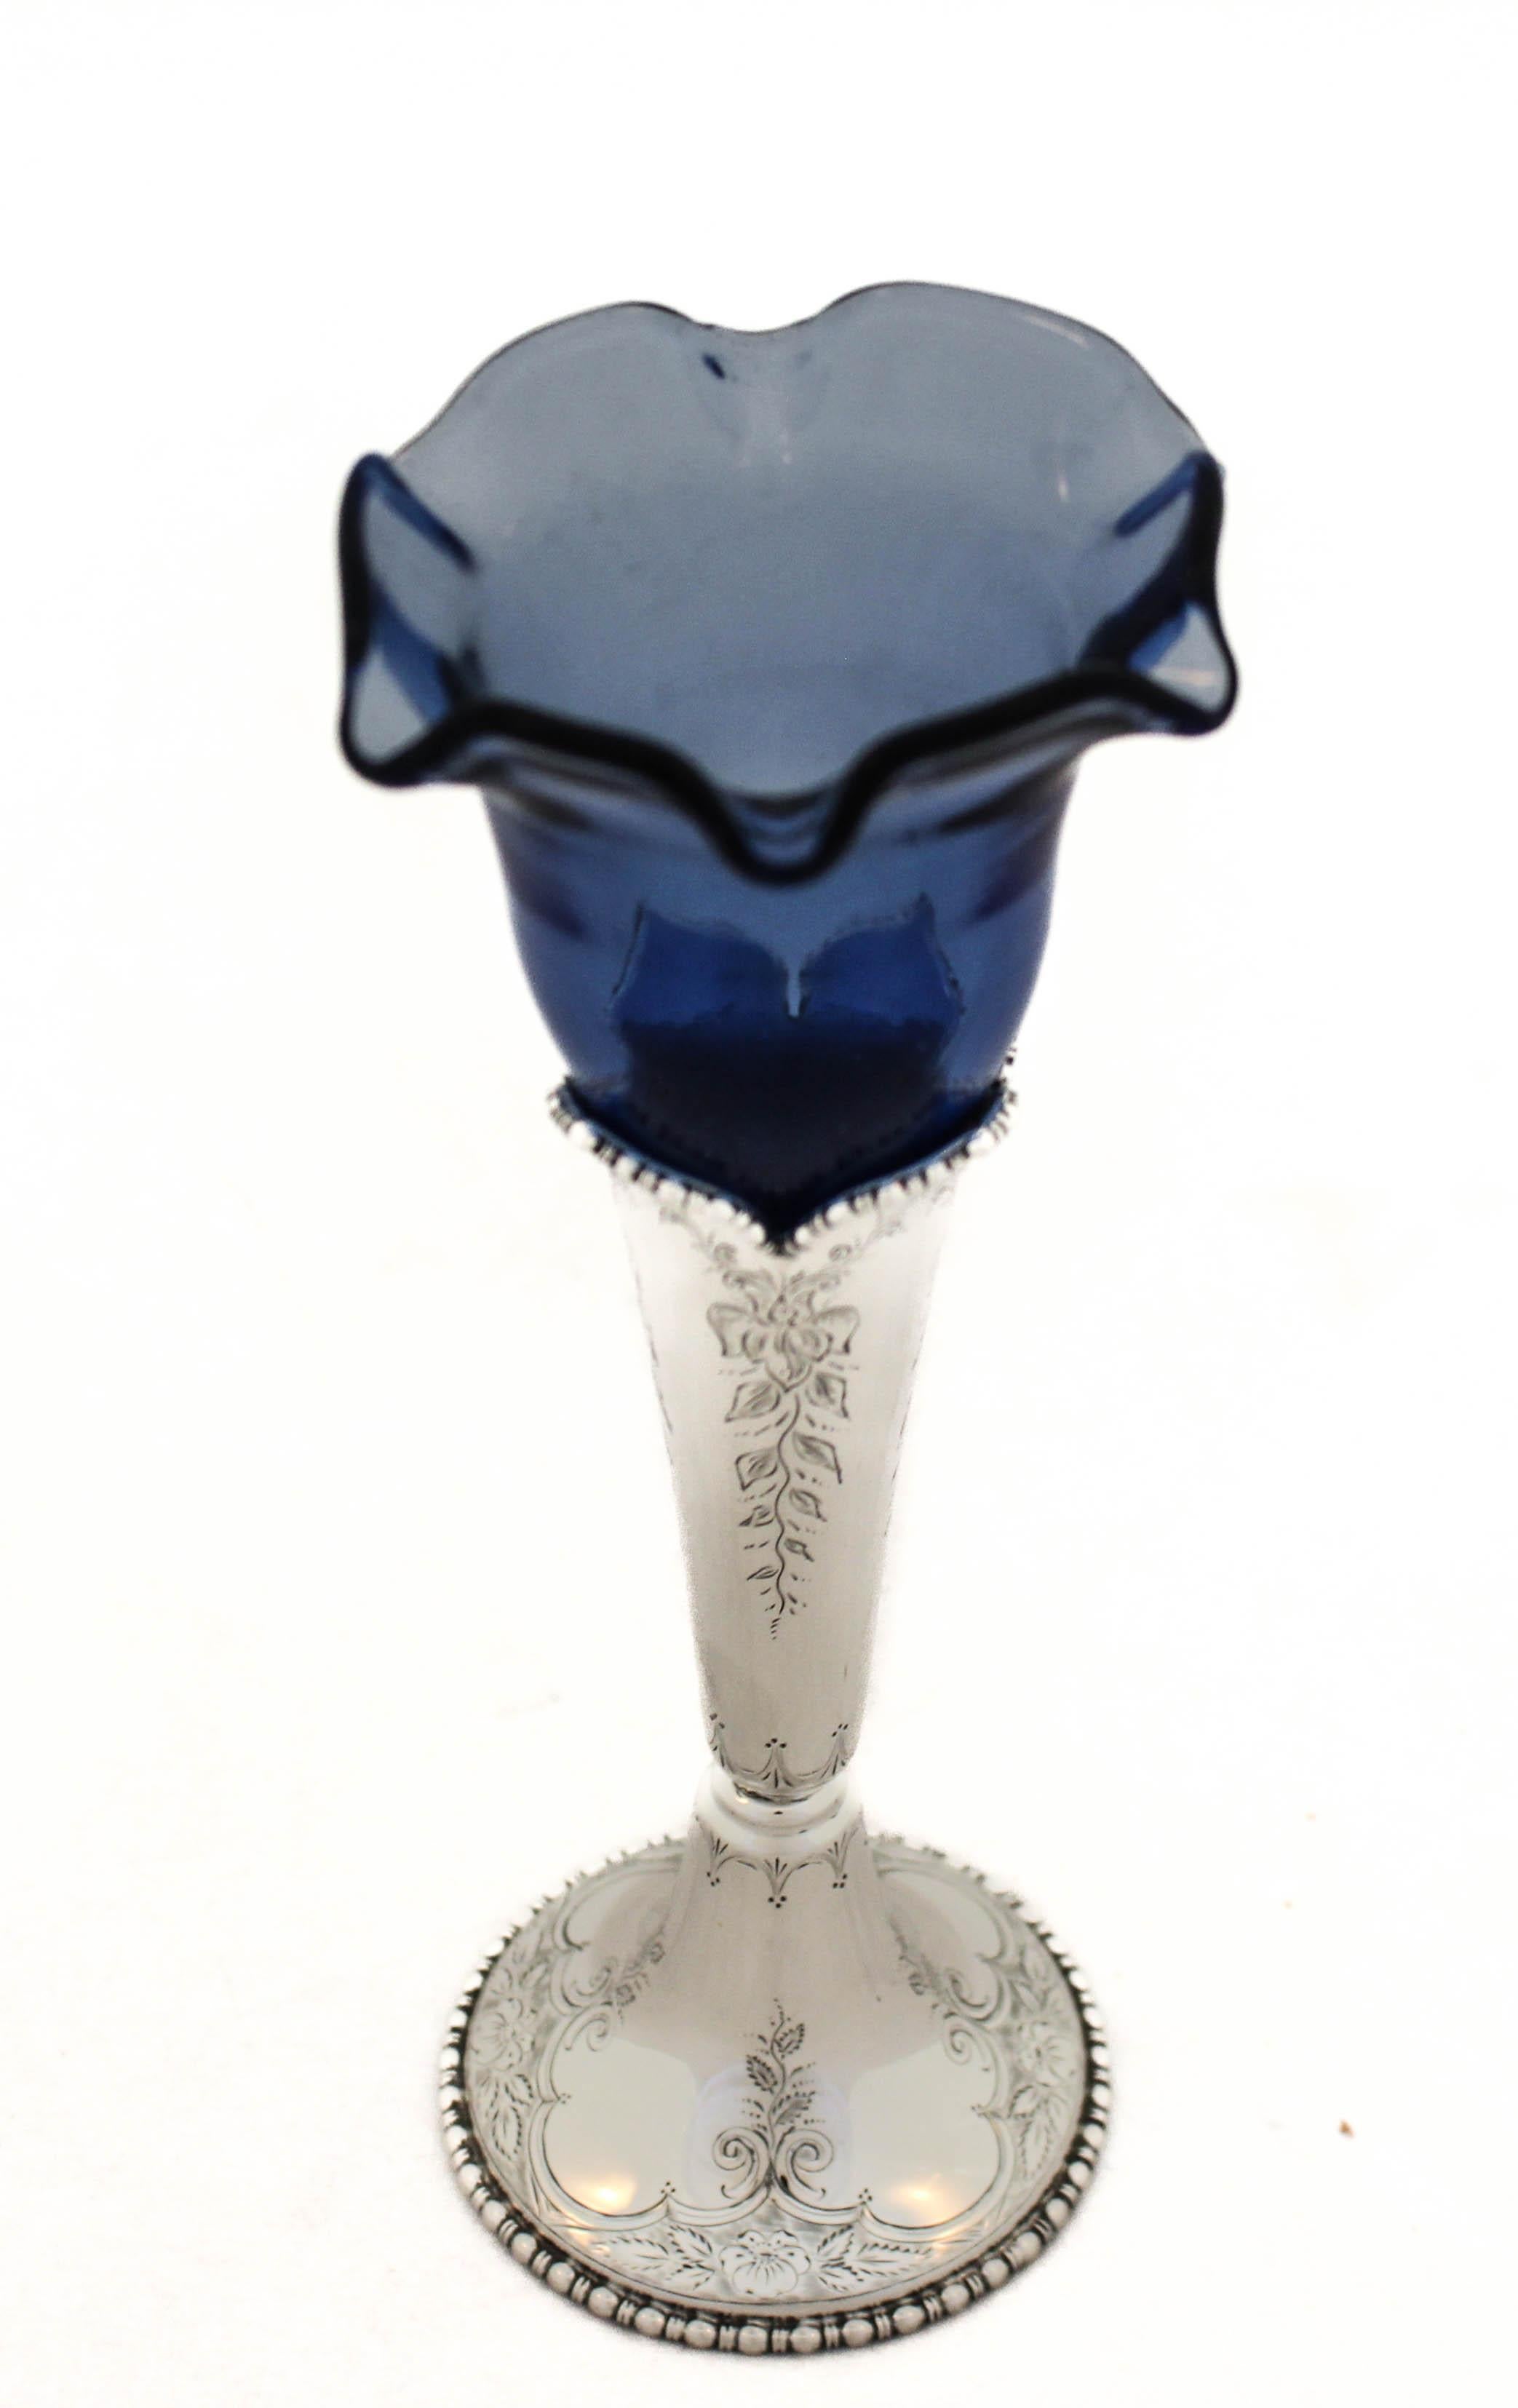 Angeboten wird eine Vase aus Sterlingsilber von Black Starr und Frost mit Glaseinsatz.  Der silberne Teil hat ein geätztes Design um die Basis sowie den Körper mit einem handgravierten Monogramm in der Mitte.  Die blaue Glaseinlage ist mit einem